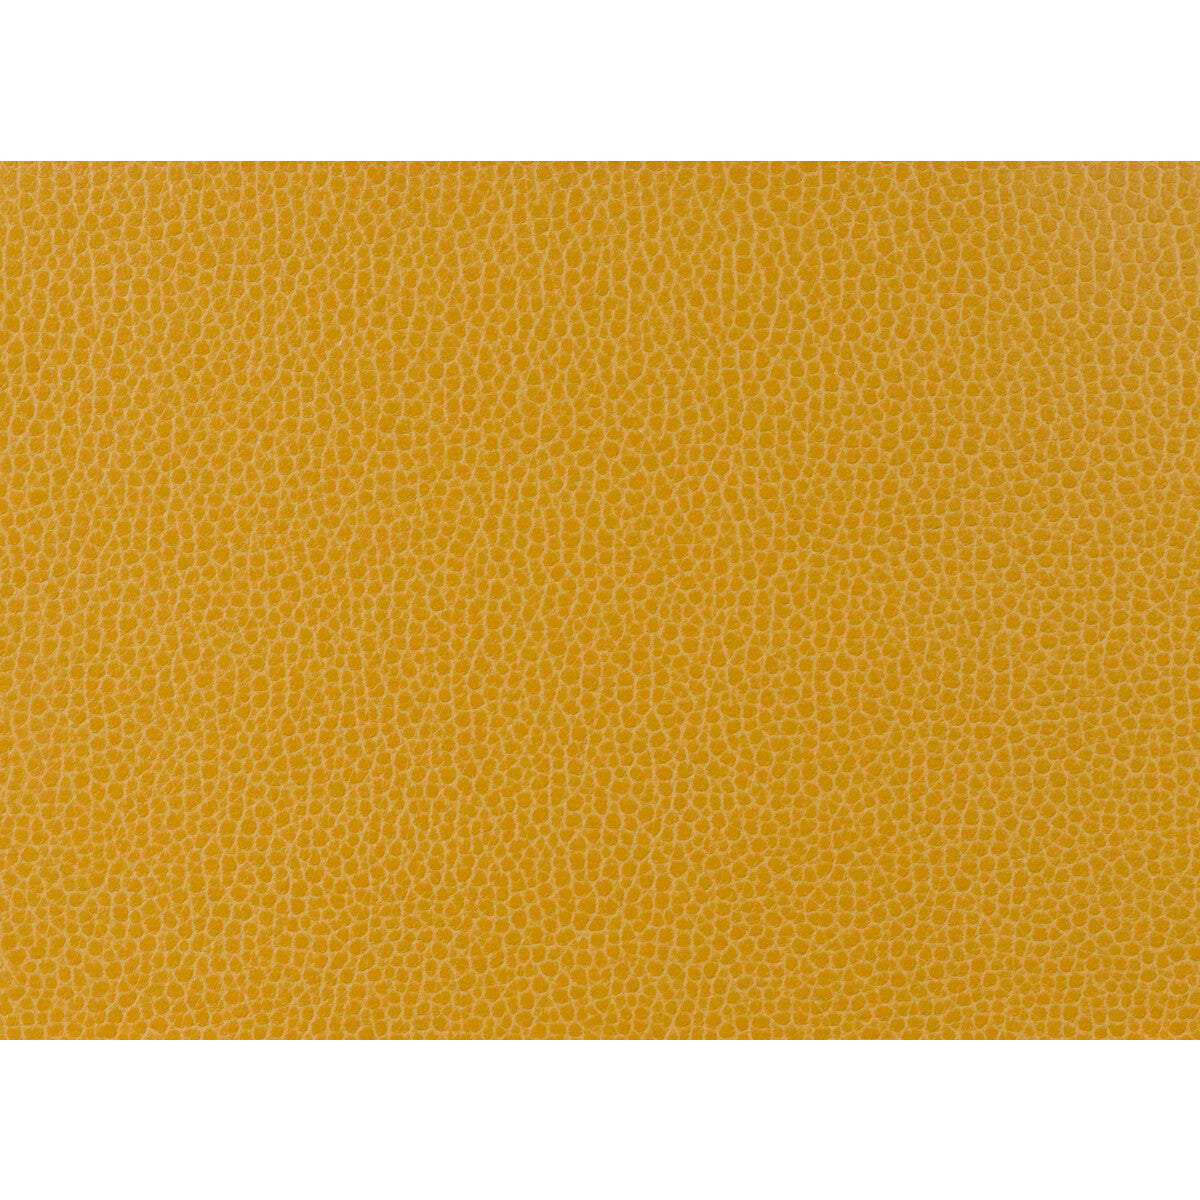 Kravet Design fabric in gillian-414 color - pattern GILLIAN.414.0 - by Kravet Design